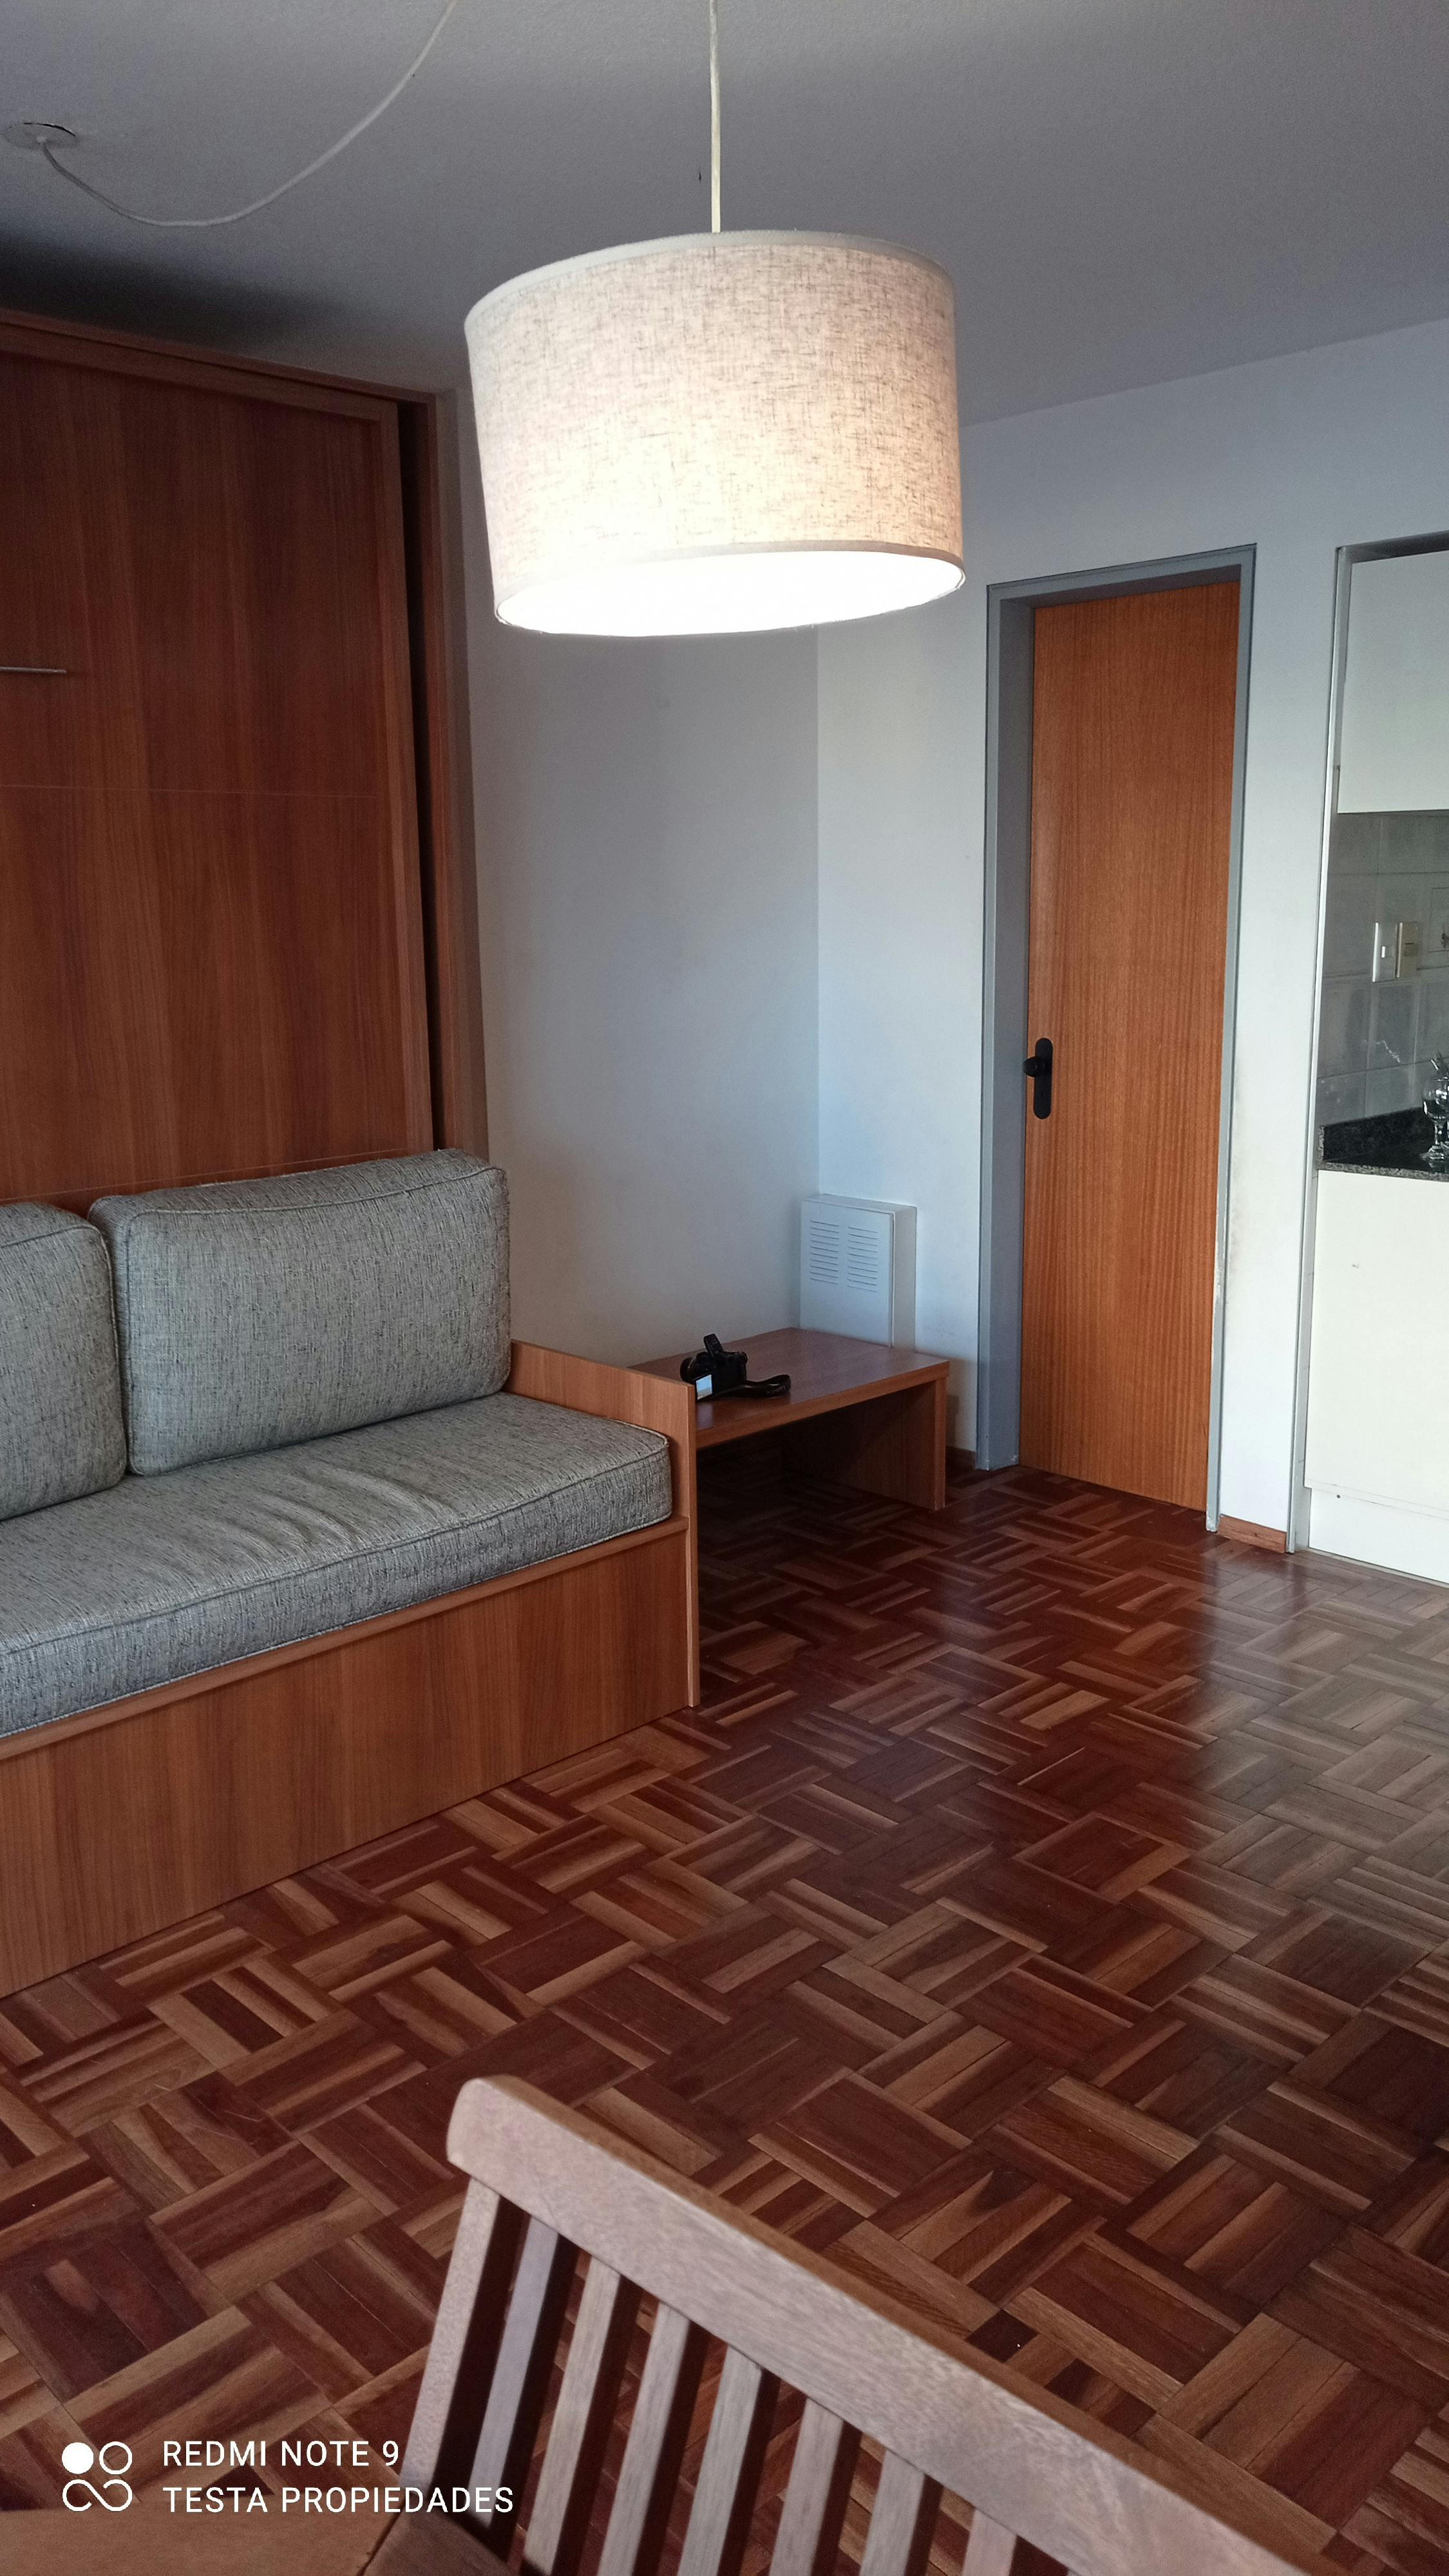 Imagen de Alquiler Monoambiente - Villa Biarritz con muebles